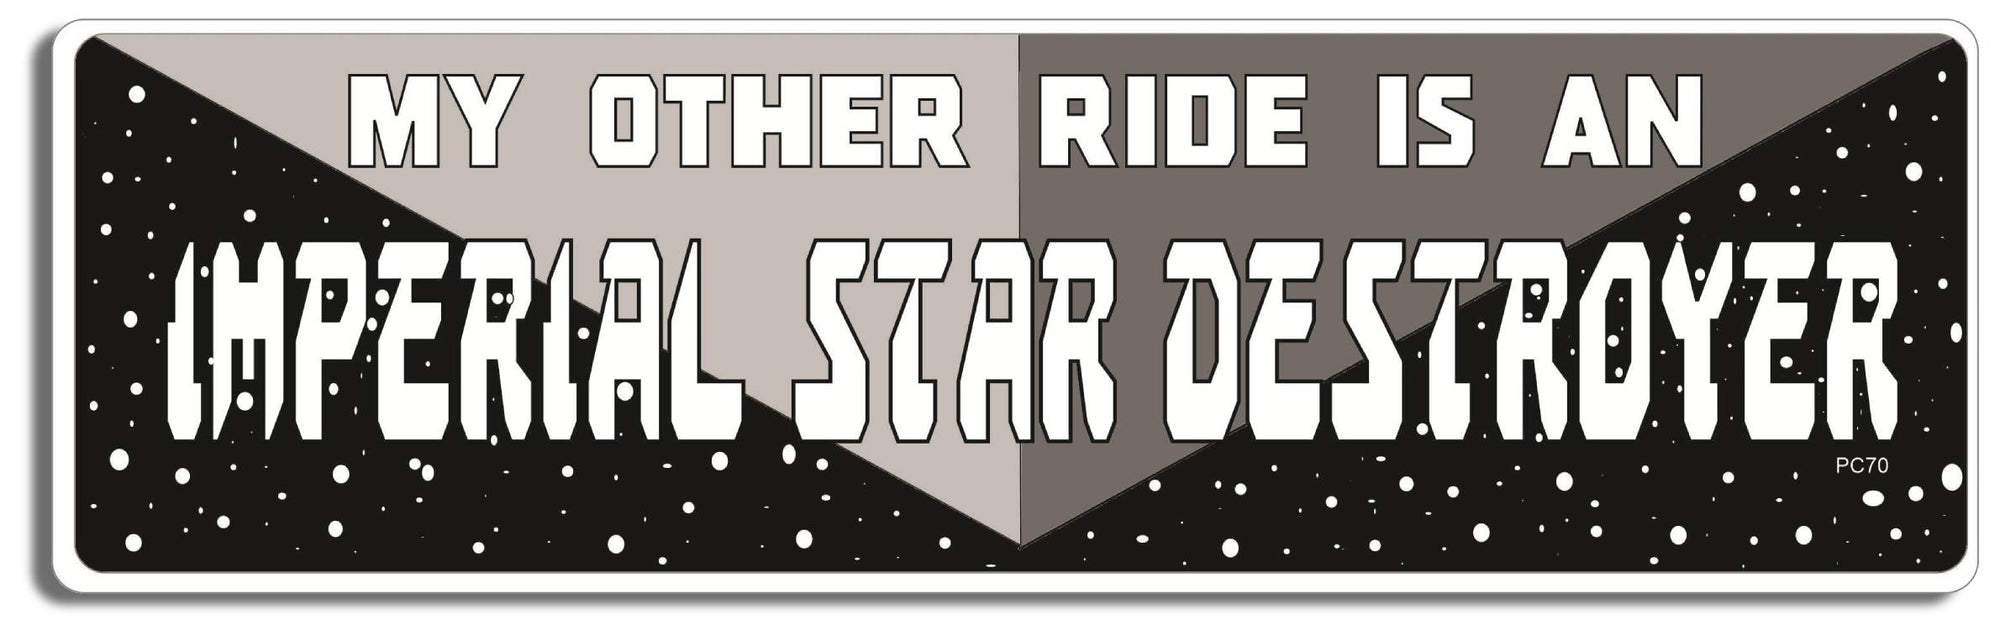 My Other Ride Is An Imperial Star Destroyer - 3" x 10" -  Decal Bumper Sticker-star wars Bumper Sticker Car Magnet My Other Ride Is An Imperial Star-  Decal for carsstar wars